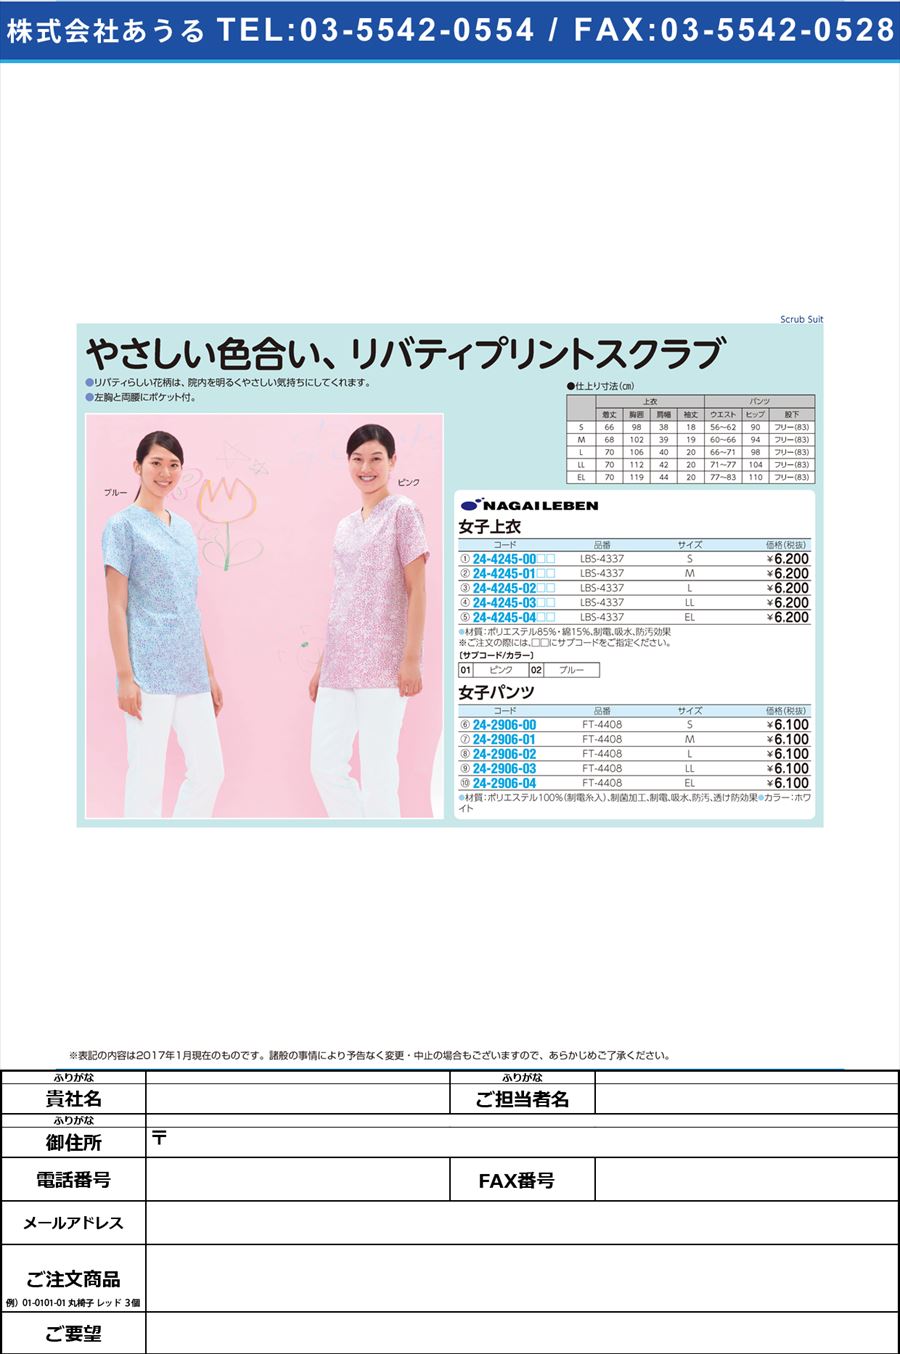 女子上衣 ｼﾞｮｼｼﾞｮｳｲ LBS-4337(EL)(24-4245-04)【1枚単位】【2017年カタログ商品】